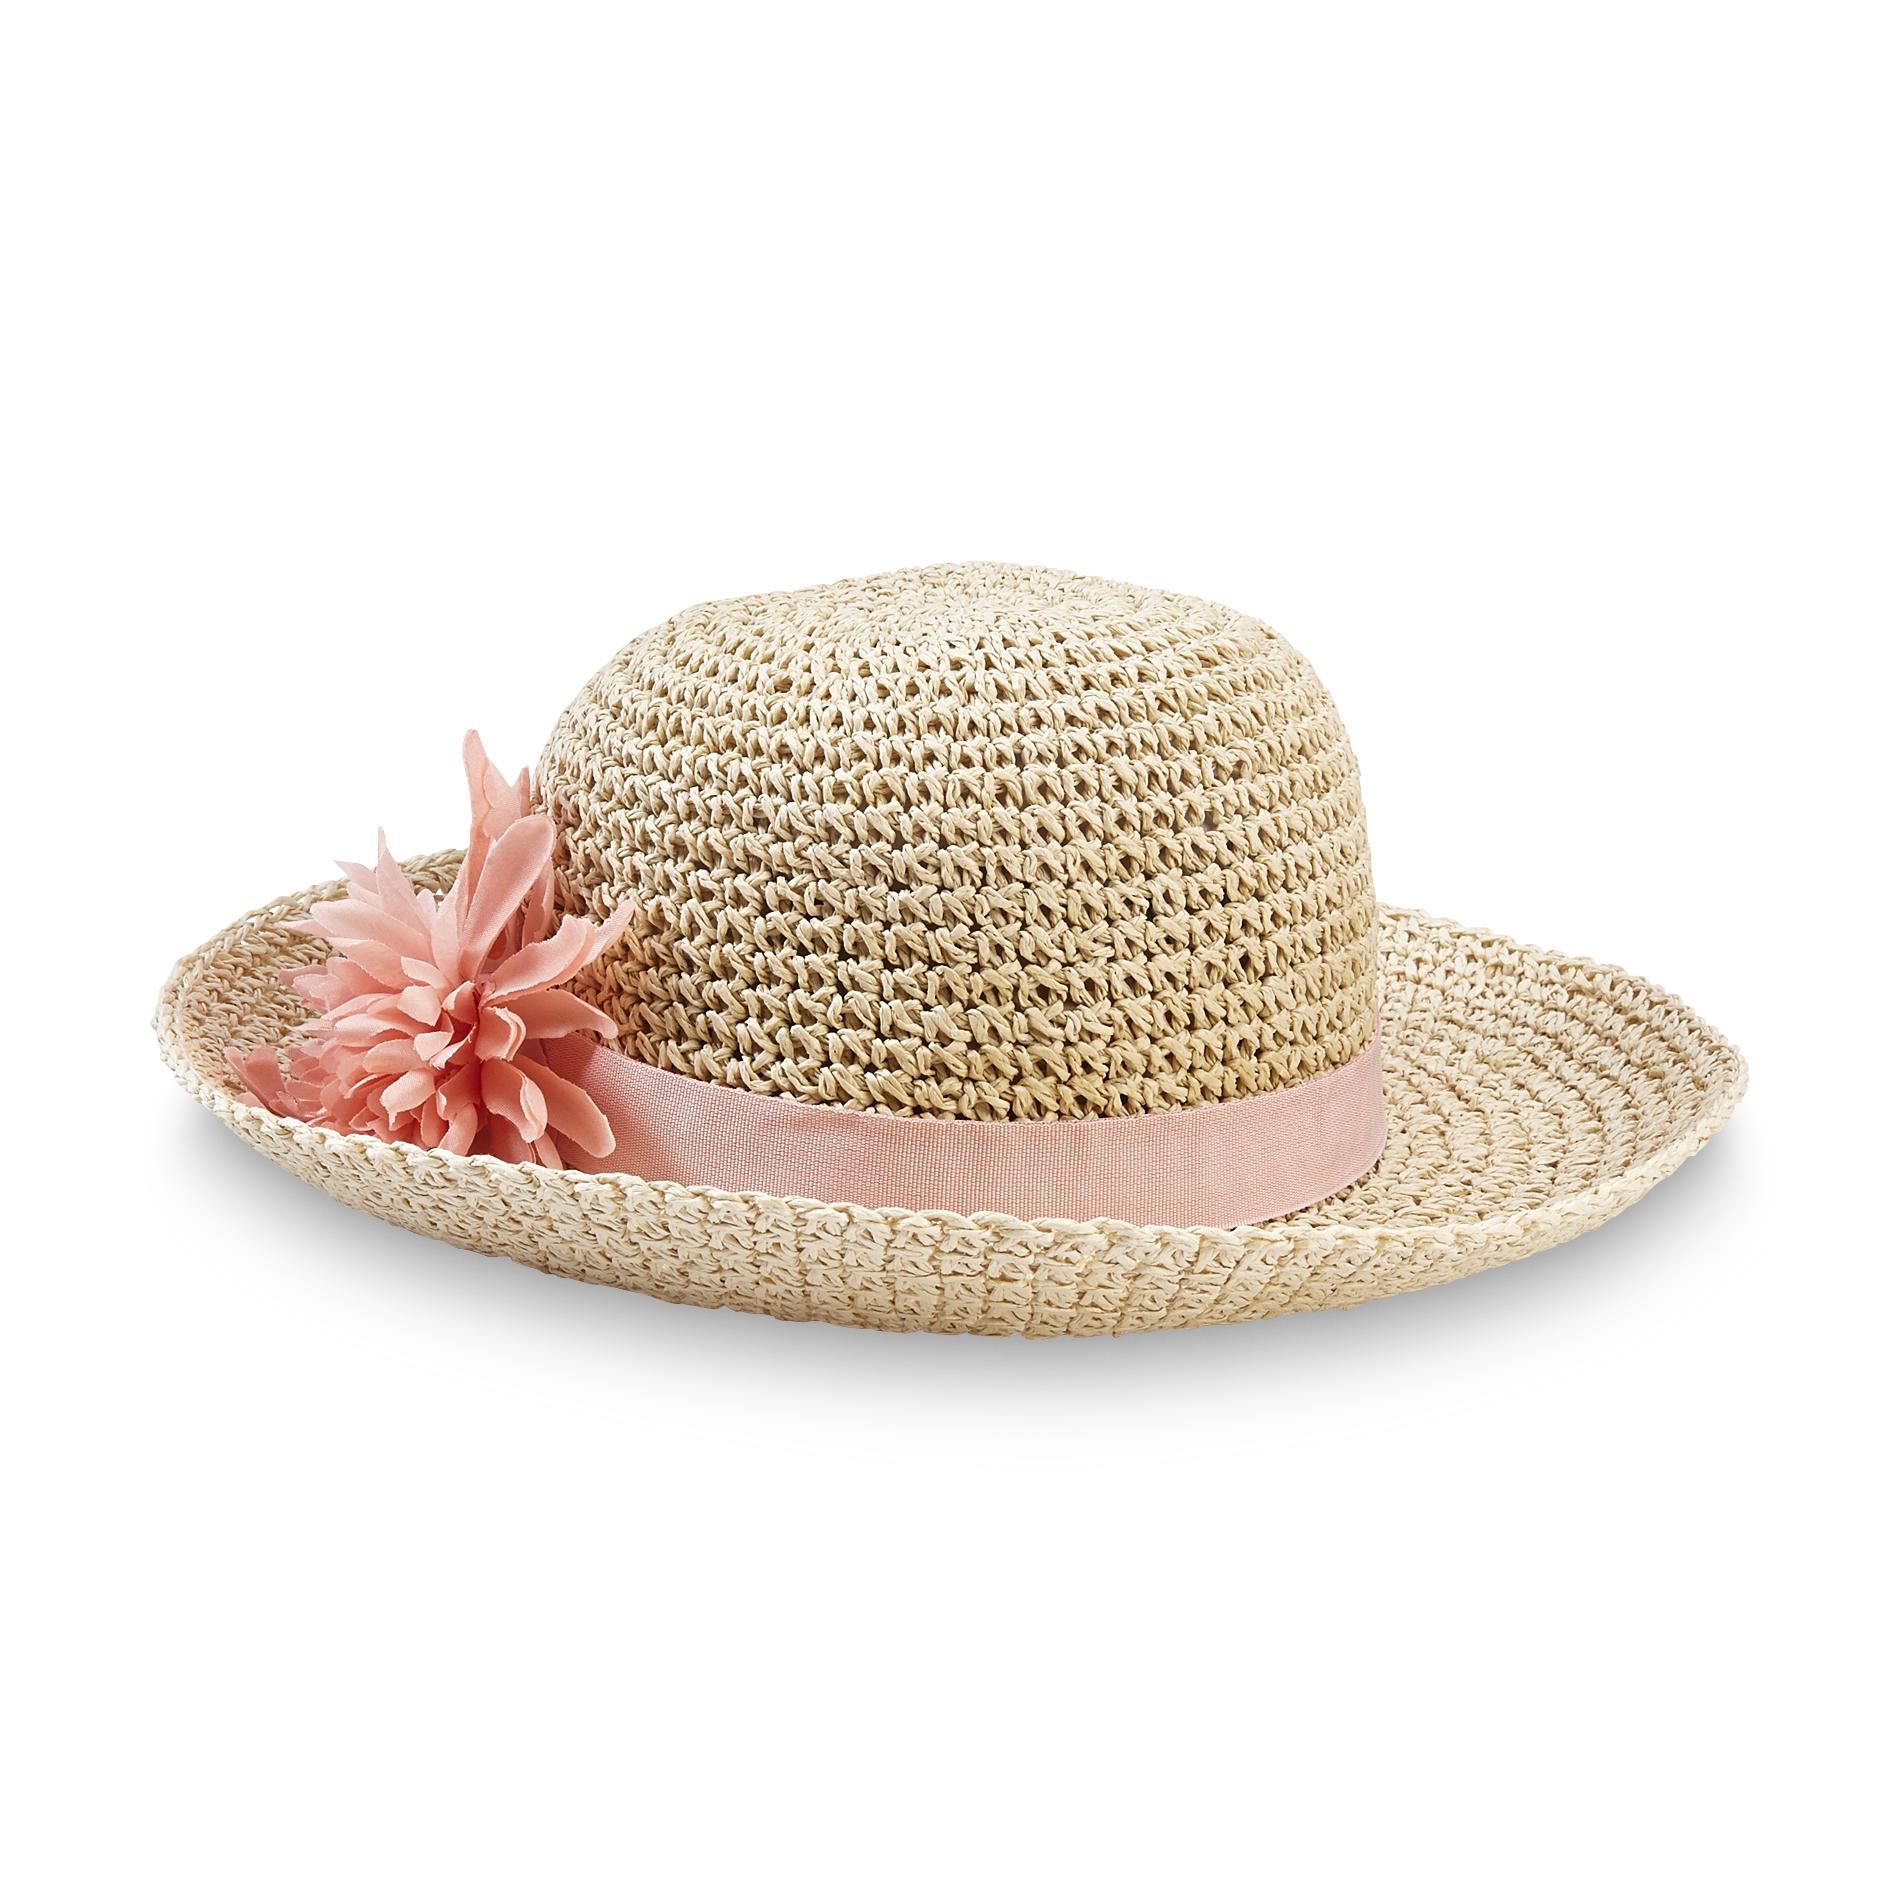 Jaclyn Smith Women's Straw Hat - Flower